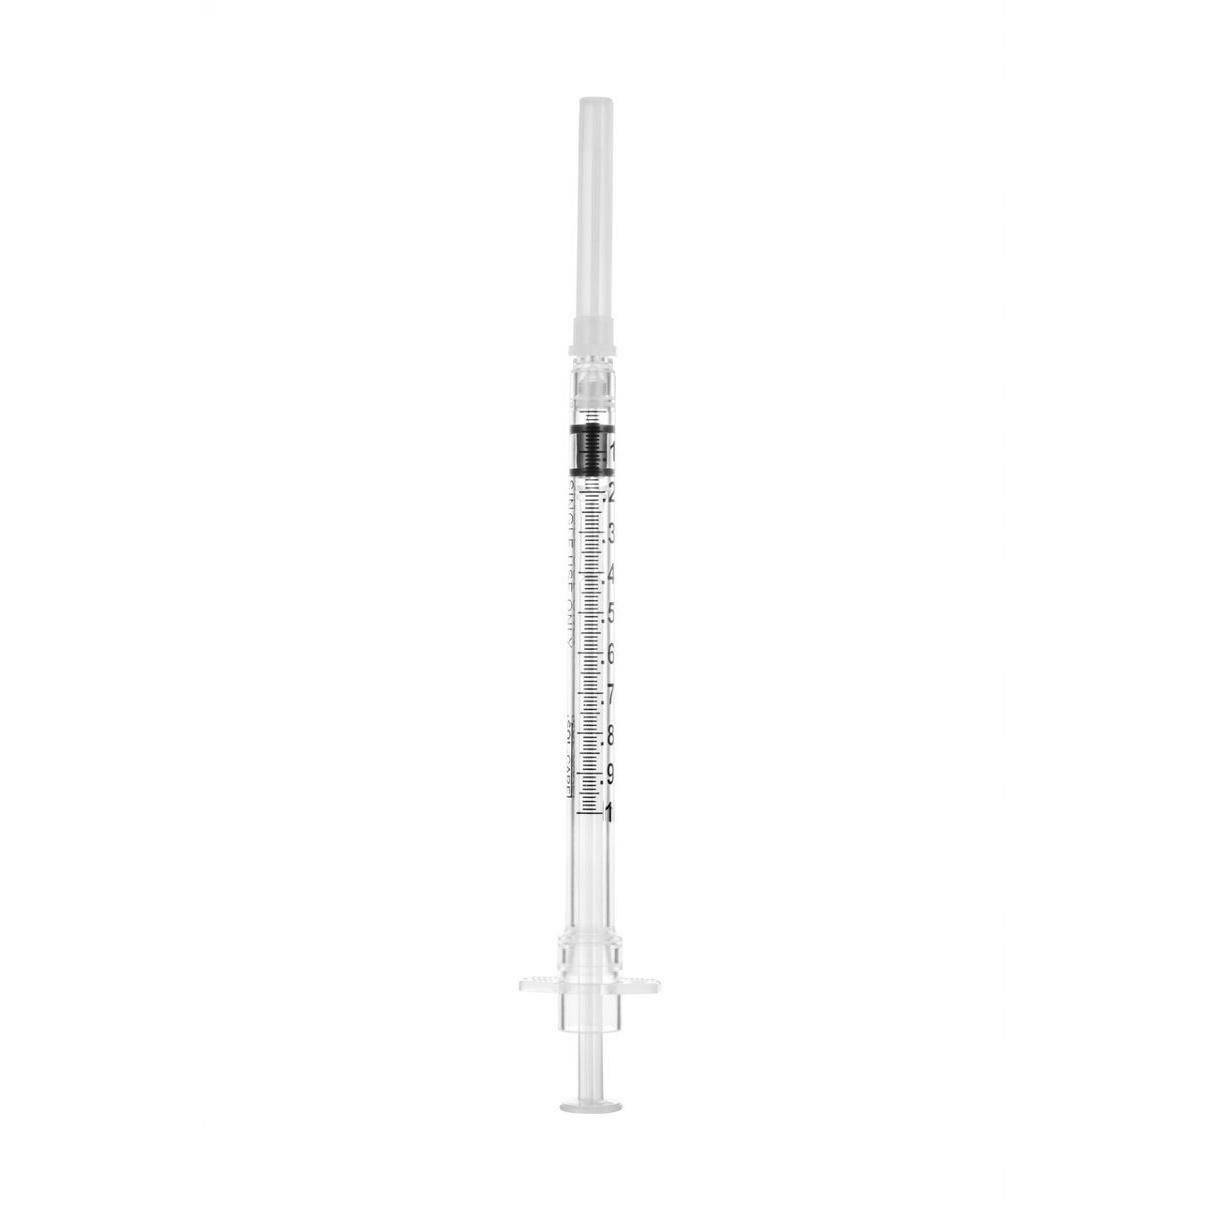 1ml 25g 5/8 inch Sol-Care Safety Syringe with Fixed Needle 100018IM UKMEDI.CO.UK